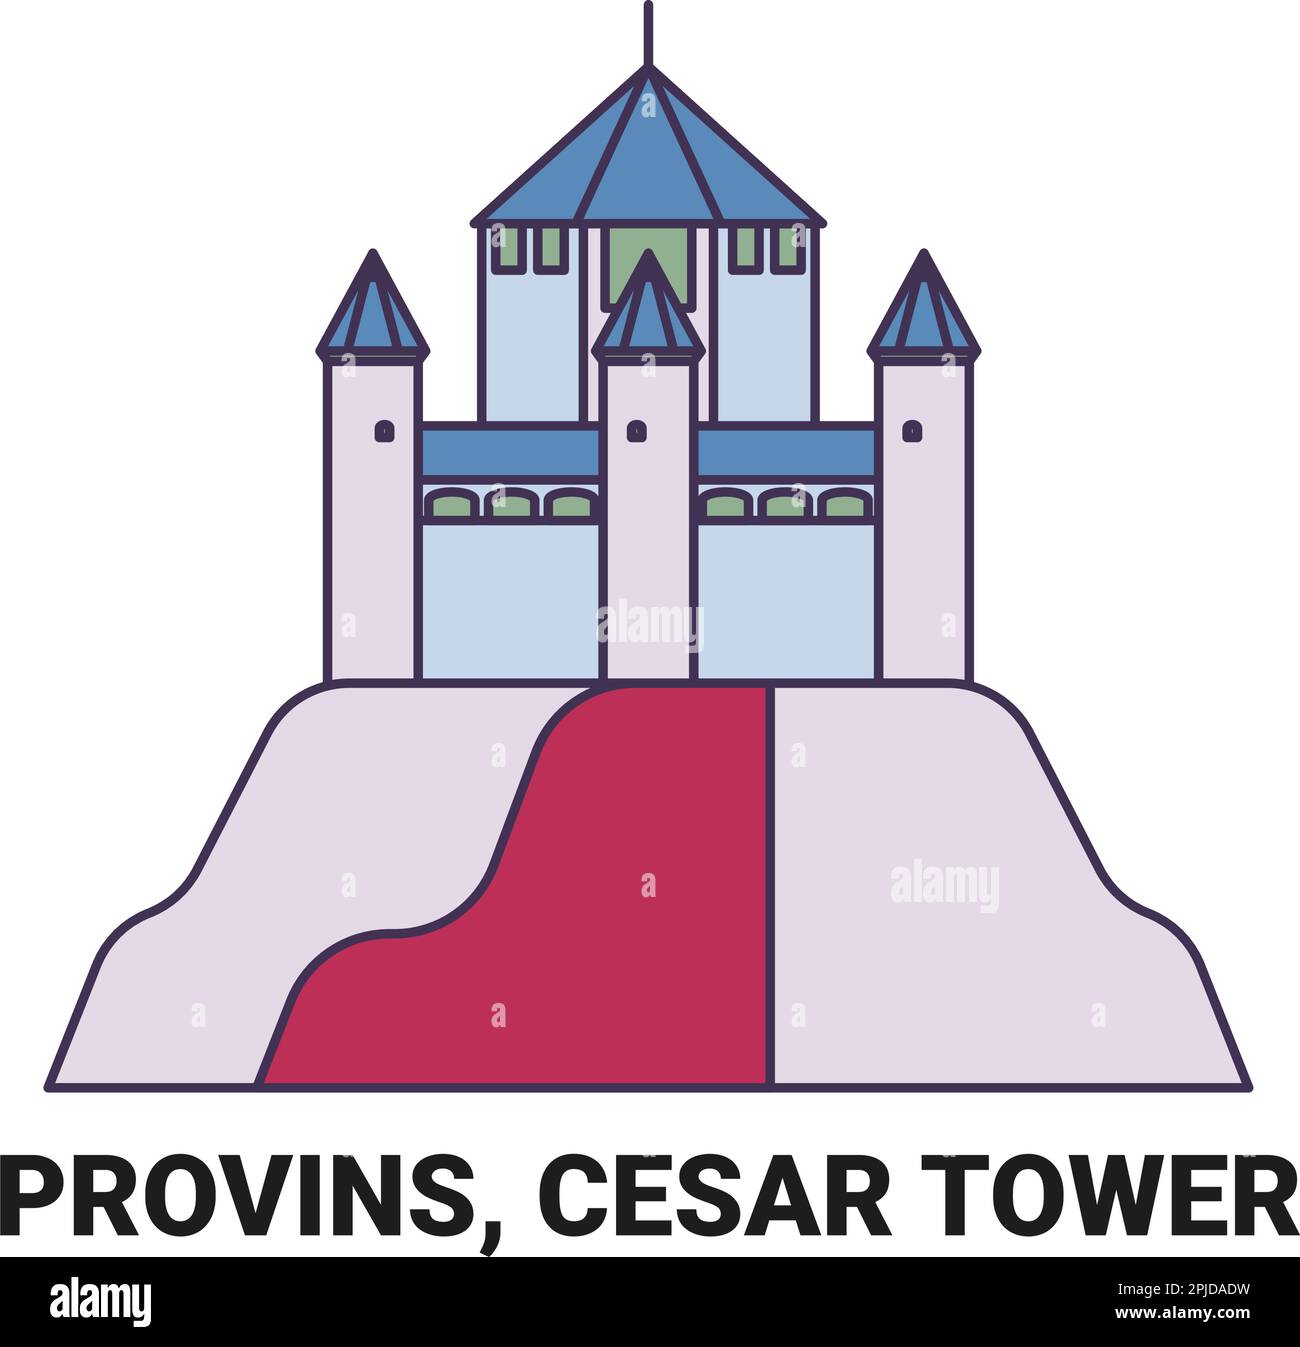 France, Provins, C, SAR Tower Travel illustration vectorielle Illustration de Vecteur